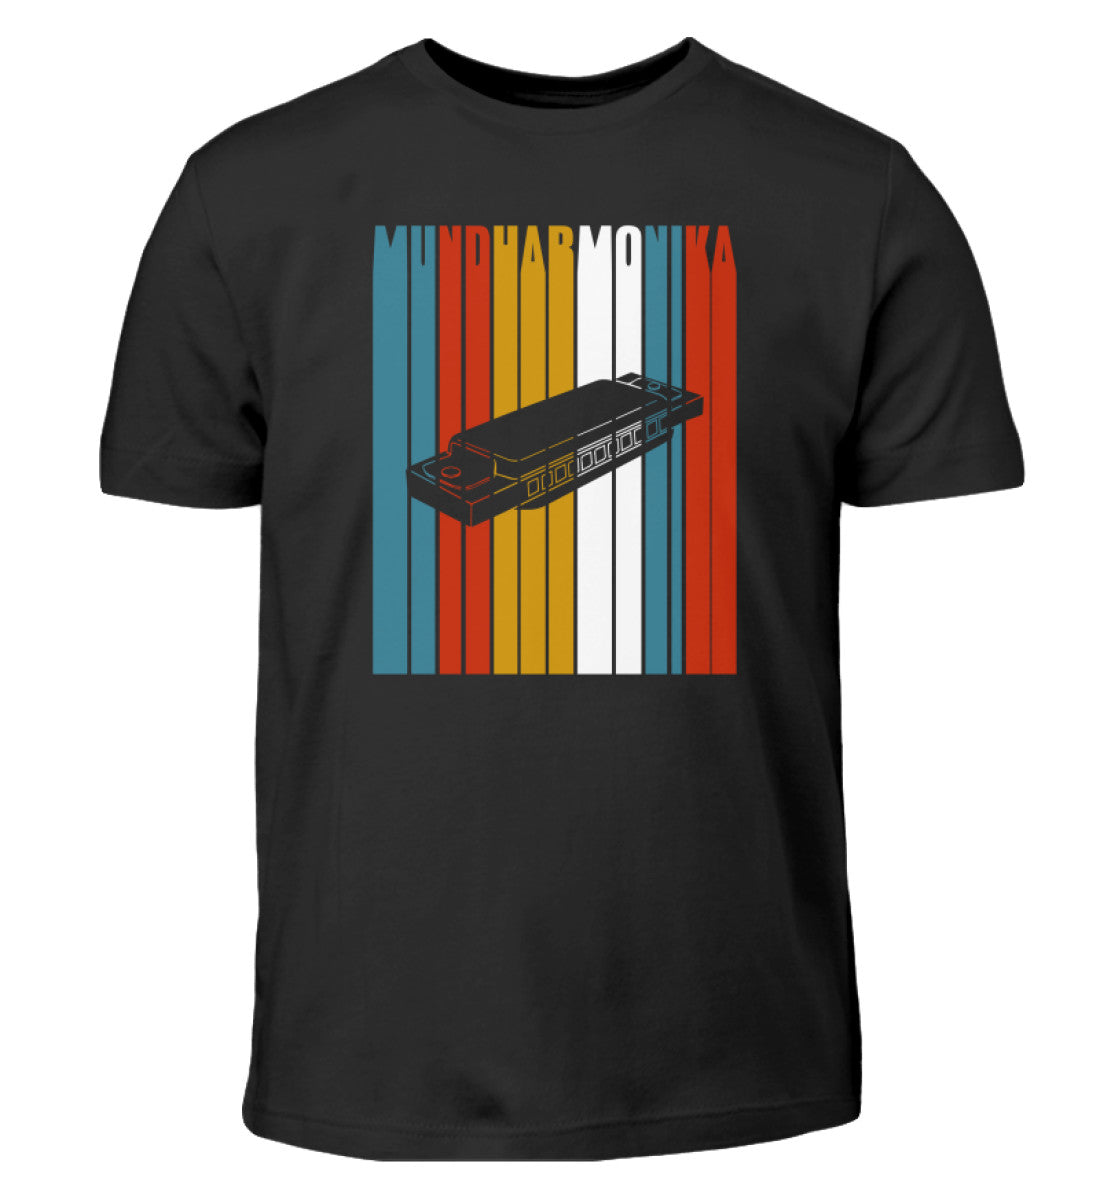 Mundharmonika Kinder T-Shirt